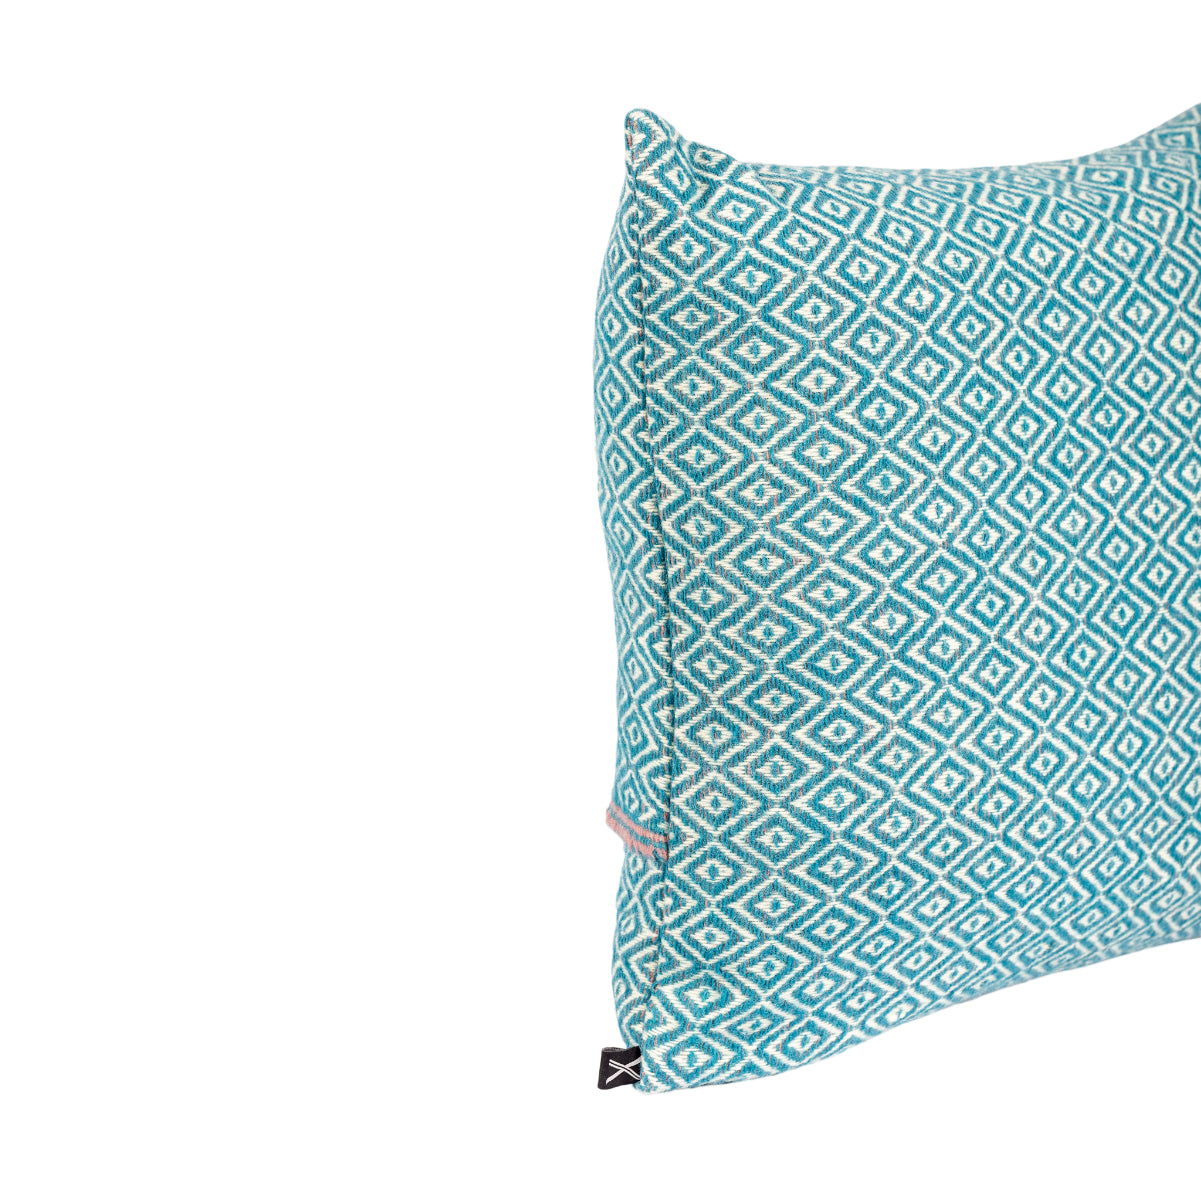 Cushion HEMMEK 45x45 Blue Wool in diamond pattern